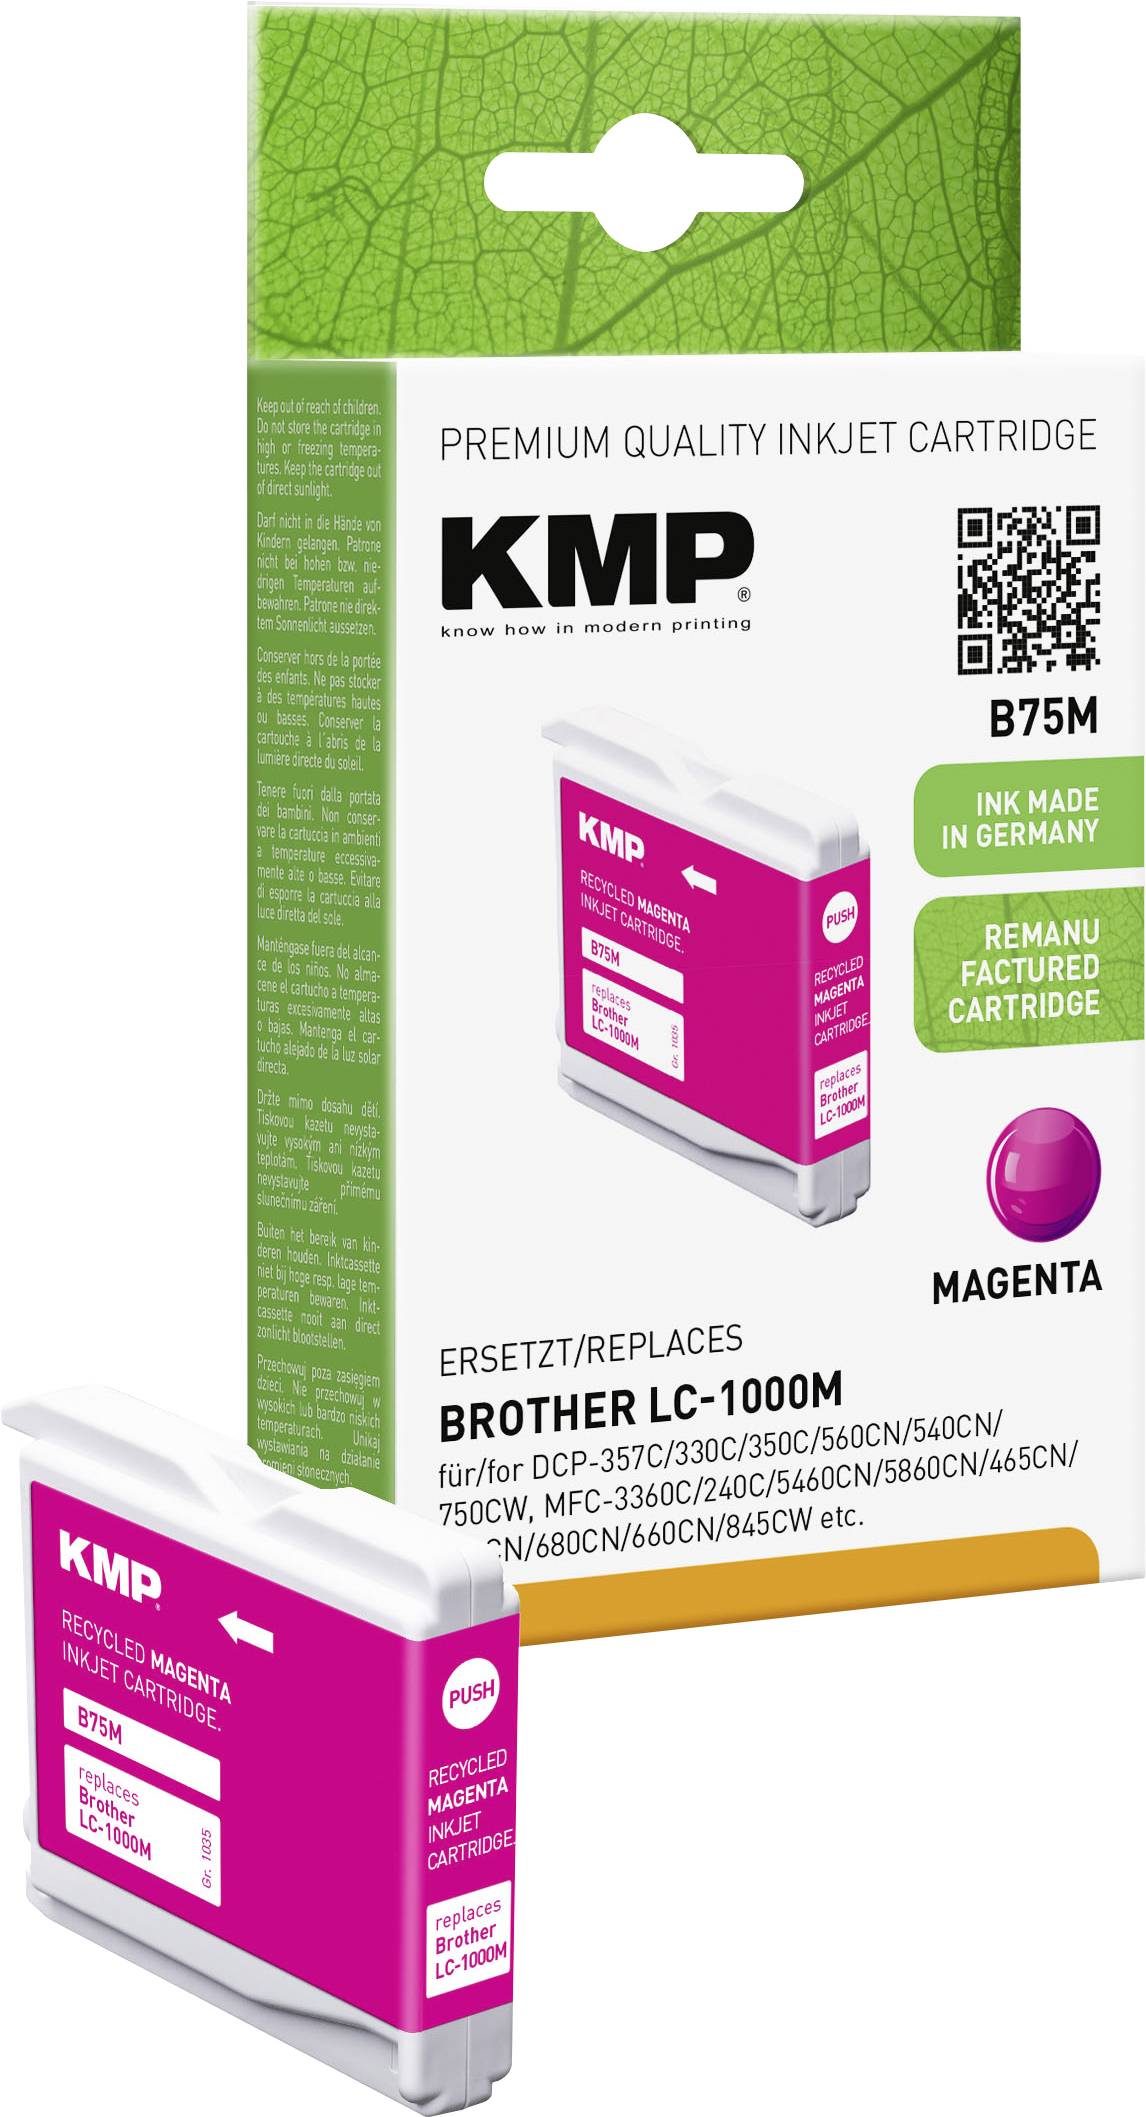 KMP Brother DCP-357C/330C/350C/560CN/540CN/750CW, MFC-3360C/240C/5460CN/5860CN/465CN/440CN/680CN/660